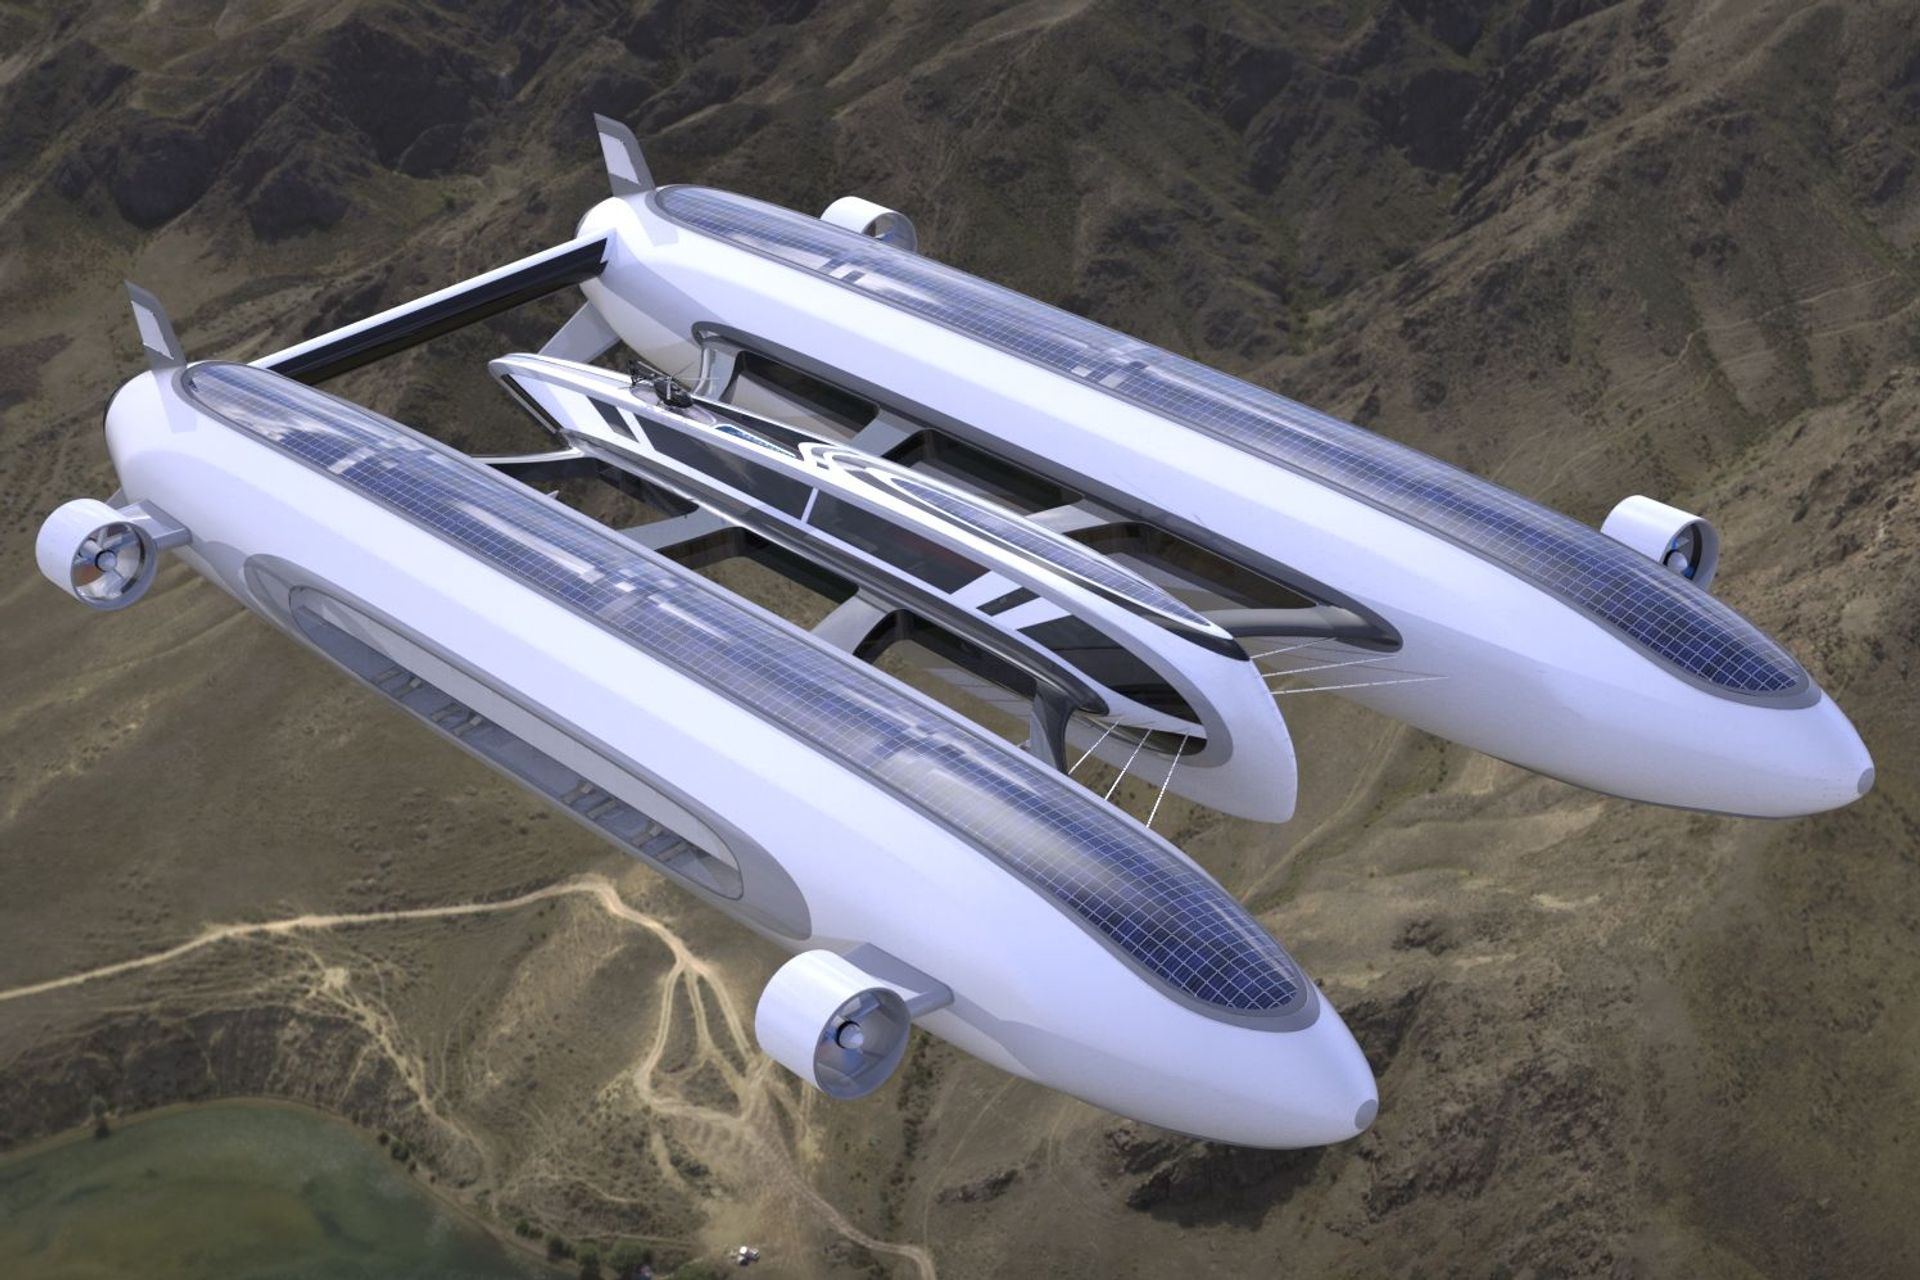 Davamlı hava və suda hərəkətlilik üçün Lazzarini Design studio tərəfindən hazırlanmış "Sky Yacht" konsepsiyası